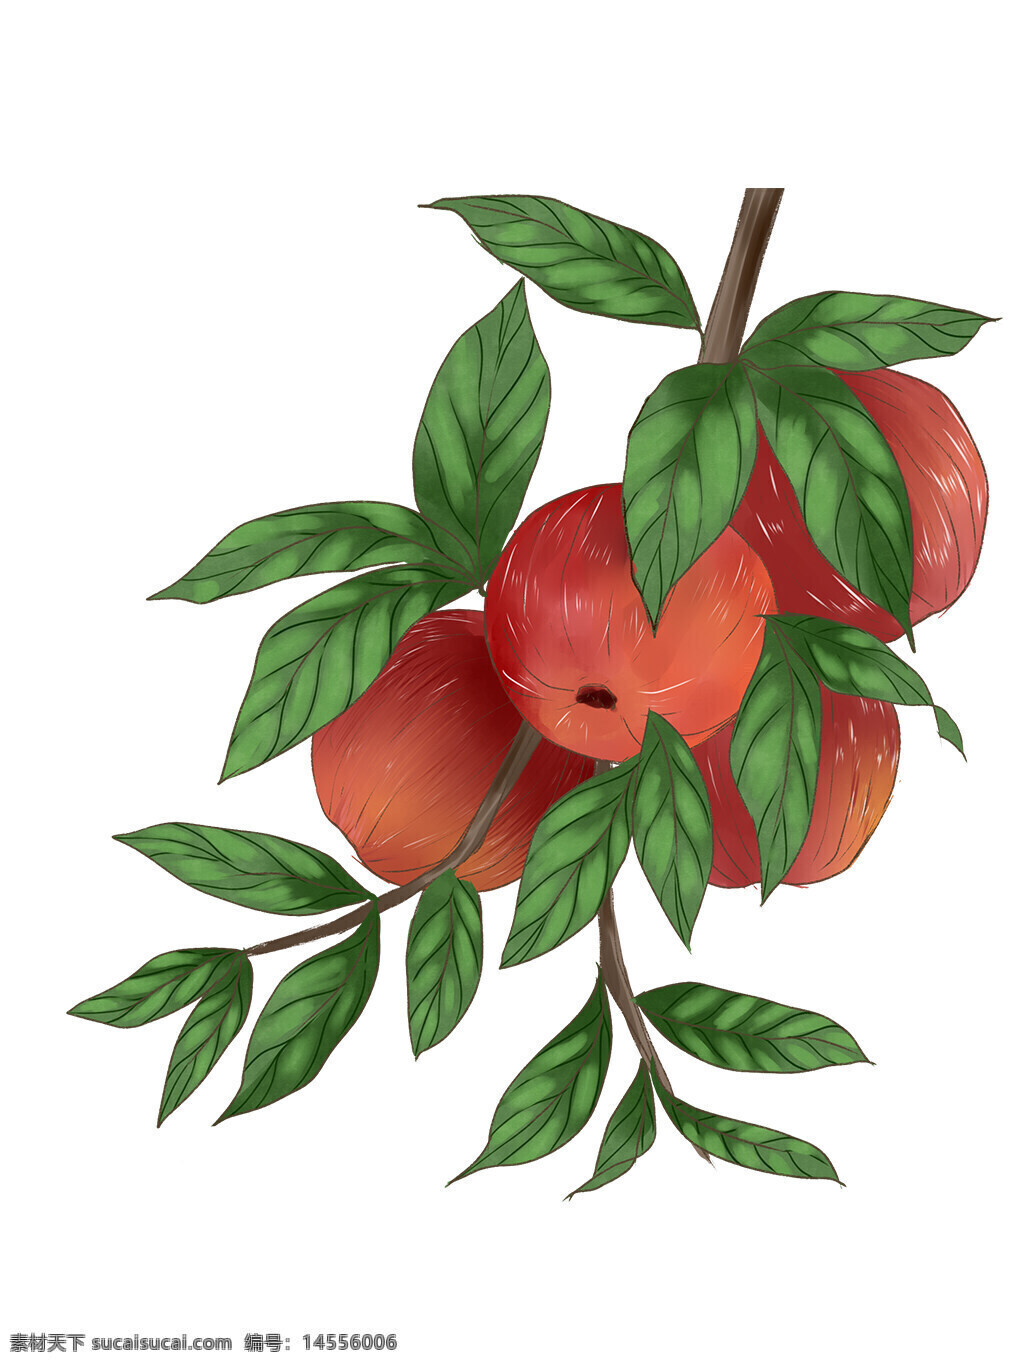 苹果 秋季 秋天 果实 苹果树 树枝 果子 水果 绘画